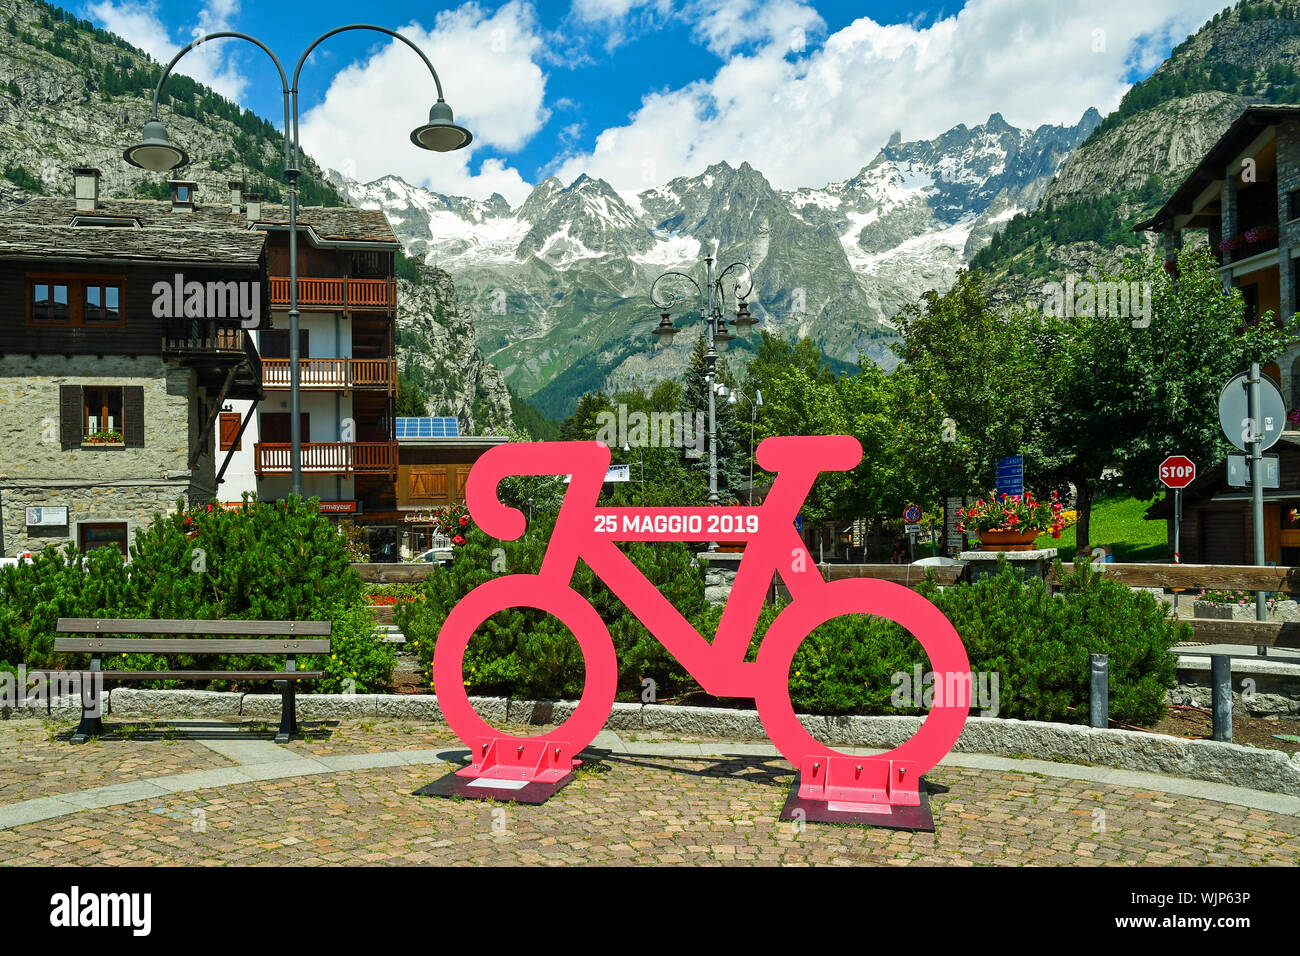 Un ciclo di rosa commemorative della quattordicesima tappa del Giro d'Italia che ha attraversato Courmayeur il 25 maggio 2019 e il massiccio del Monte Bianco, Valle d'Aosta, Italia Foto Stock